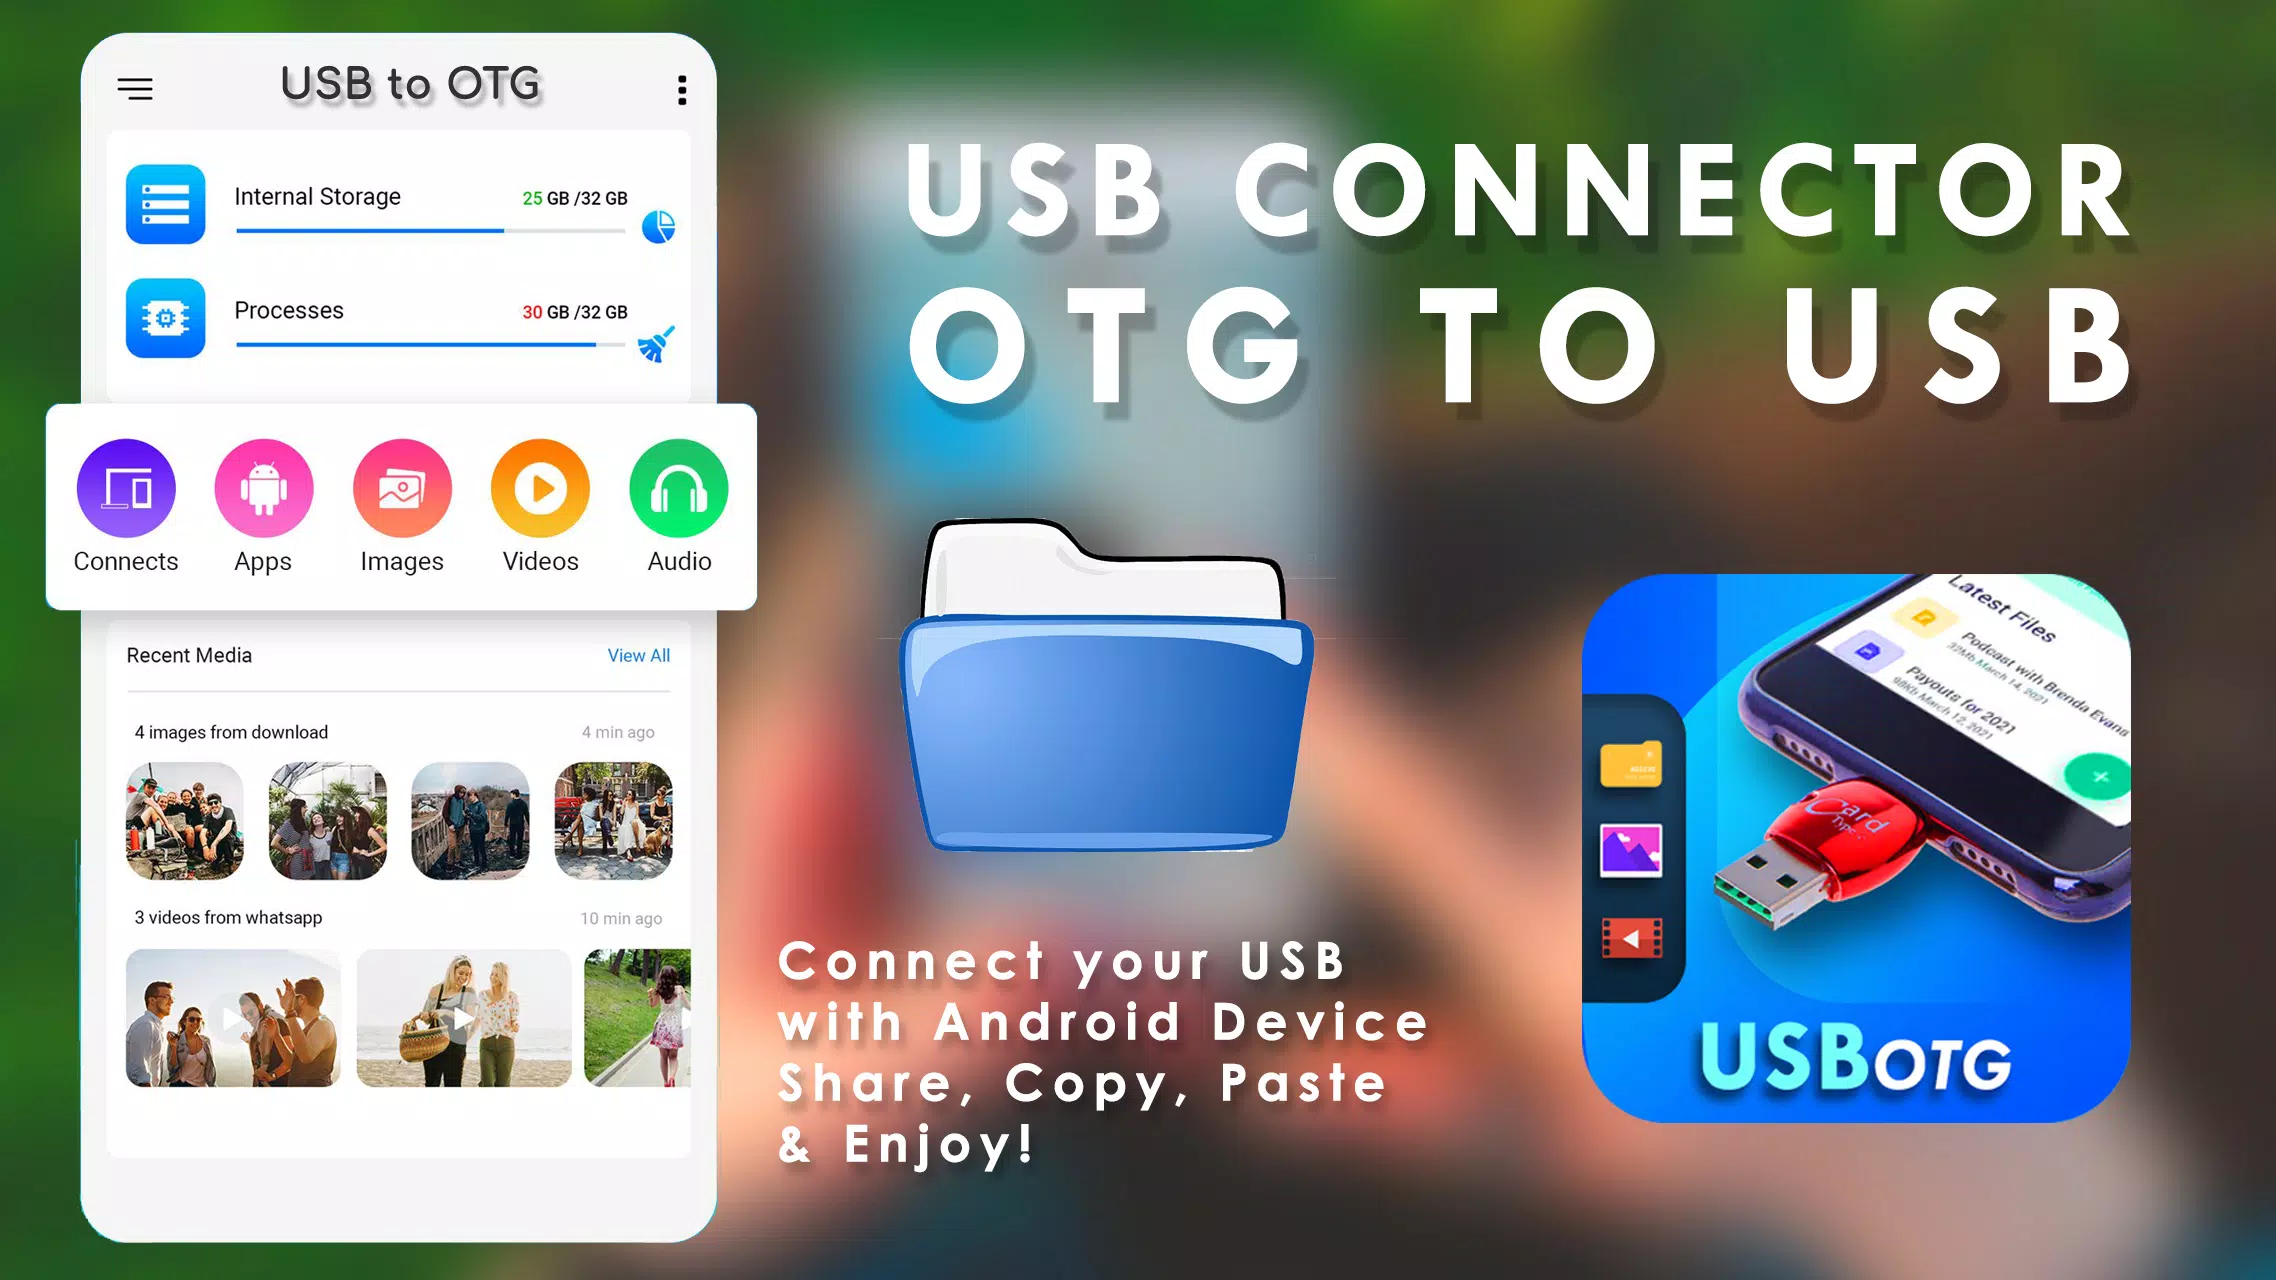 OTG USB File Explorer APK for Android Download